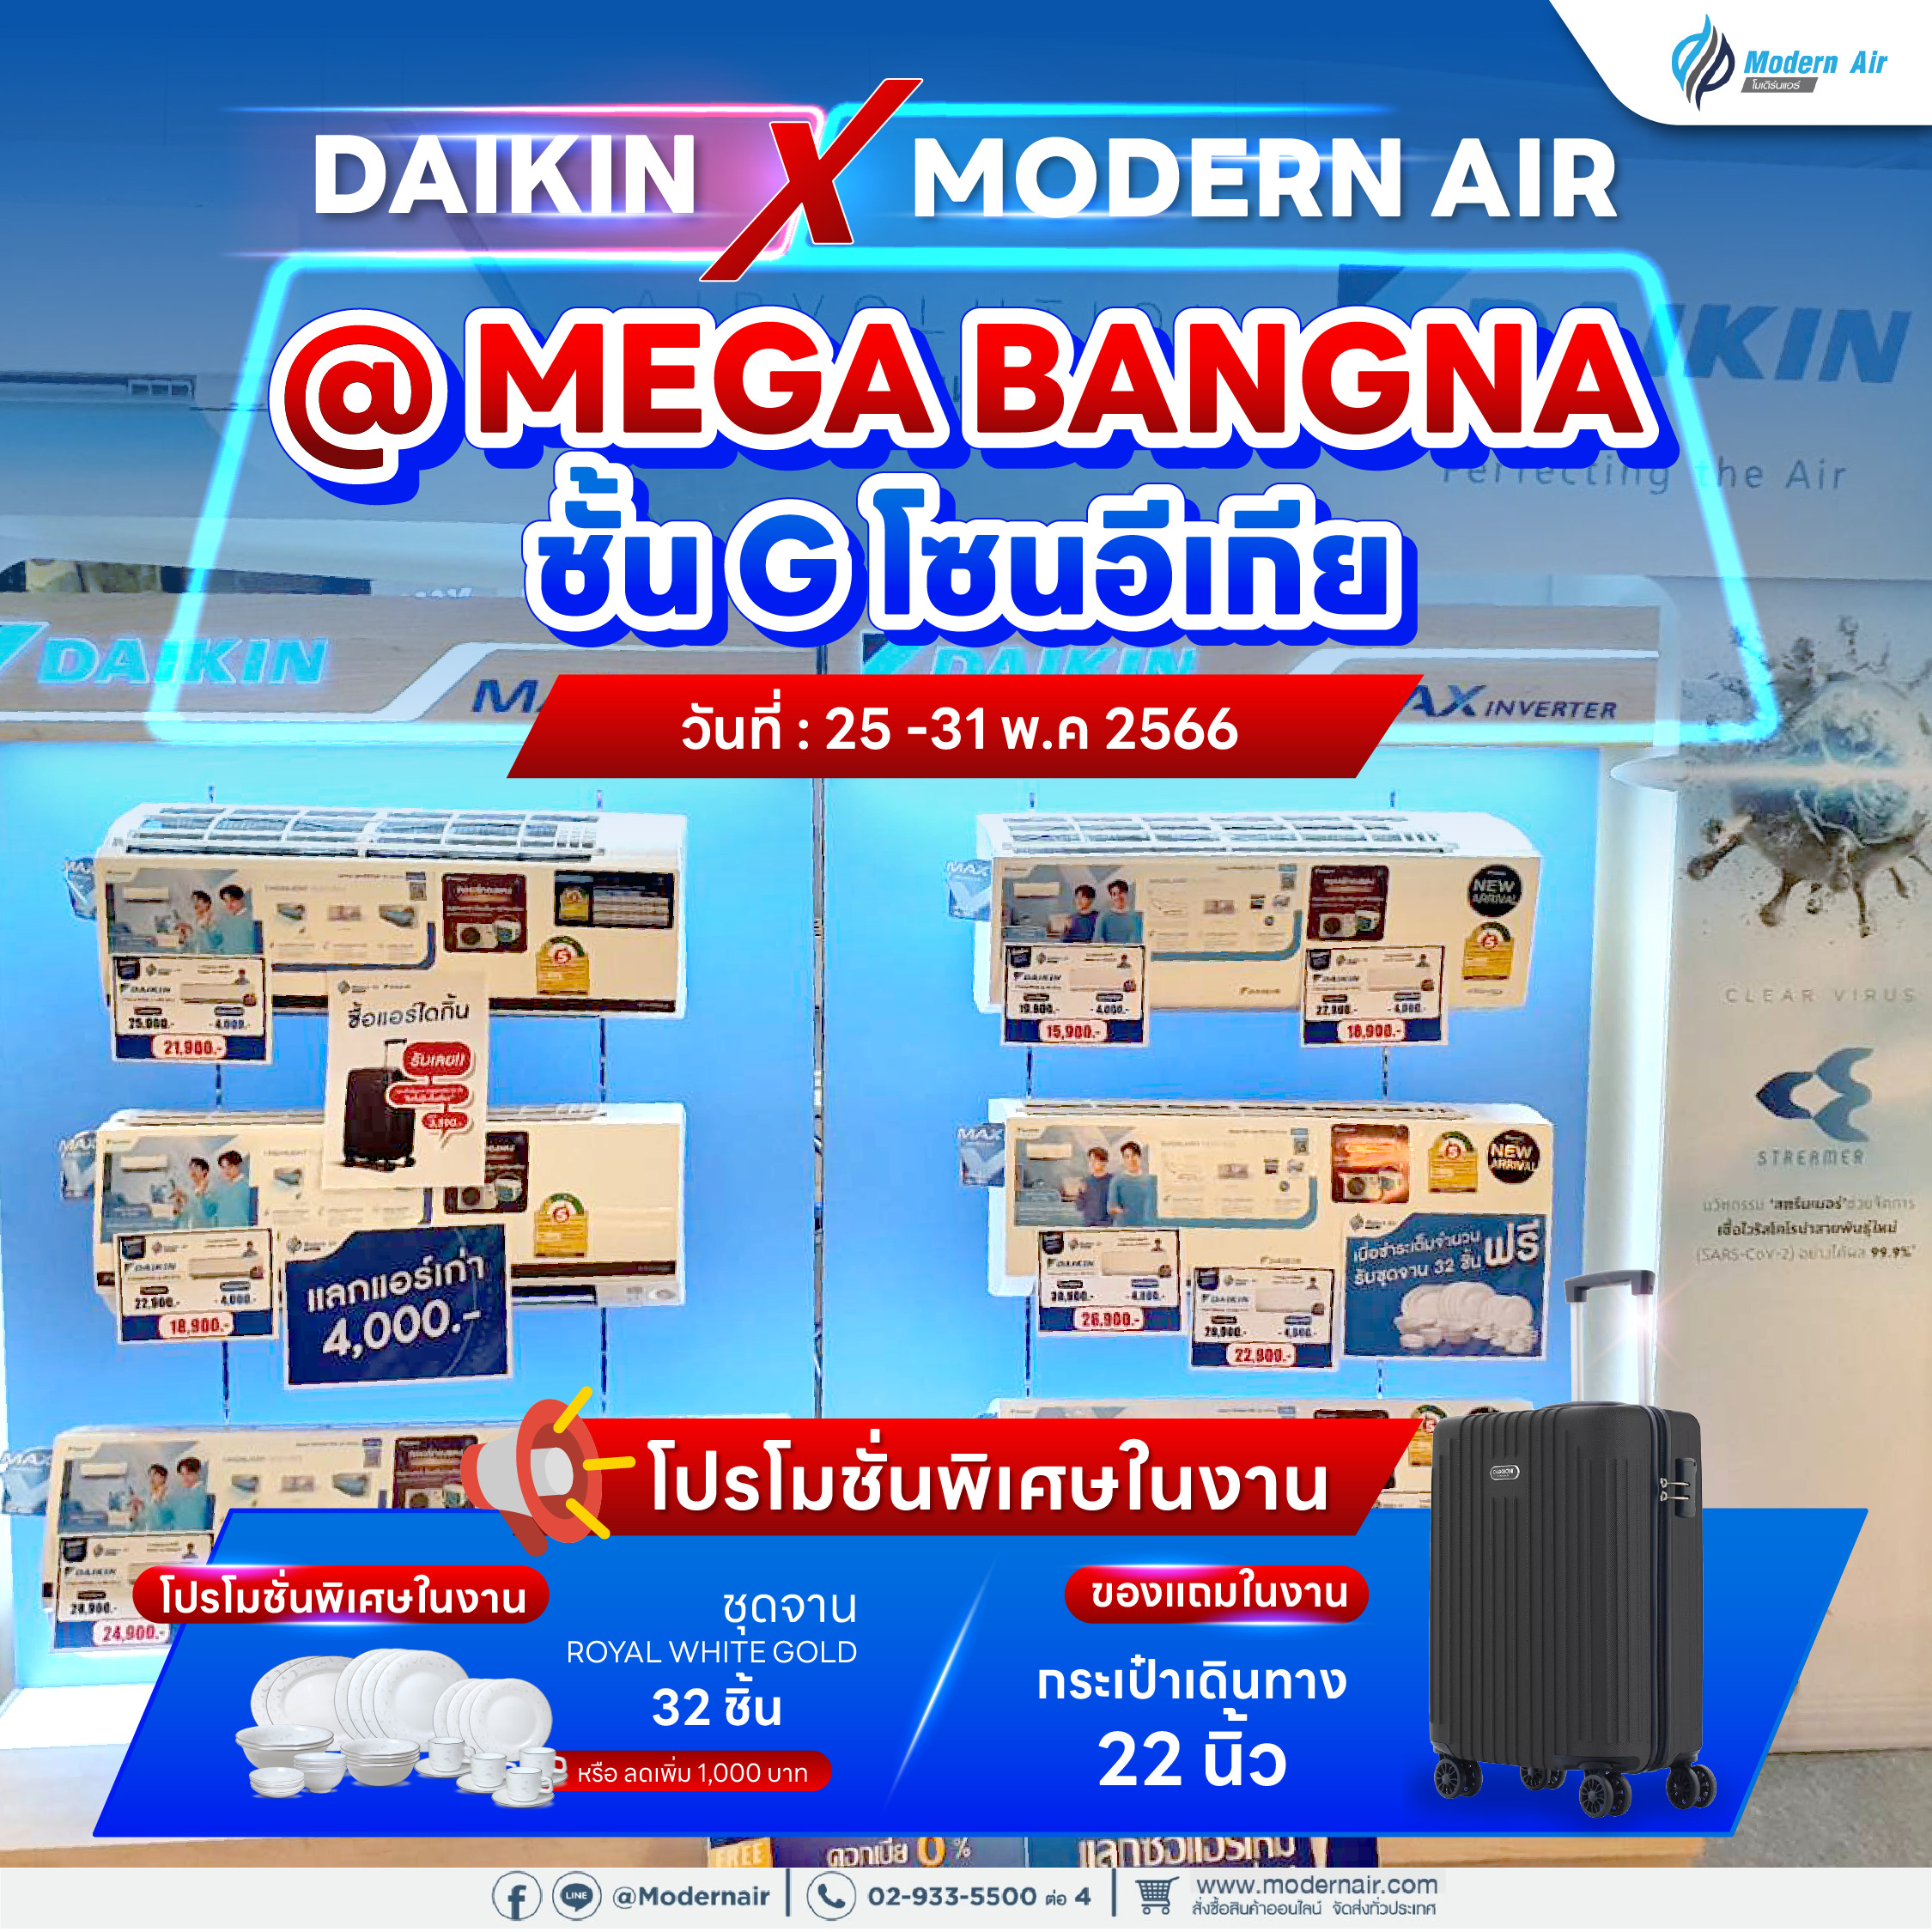 Daikin x Modern Air @ Mega Bangna